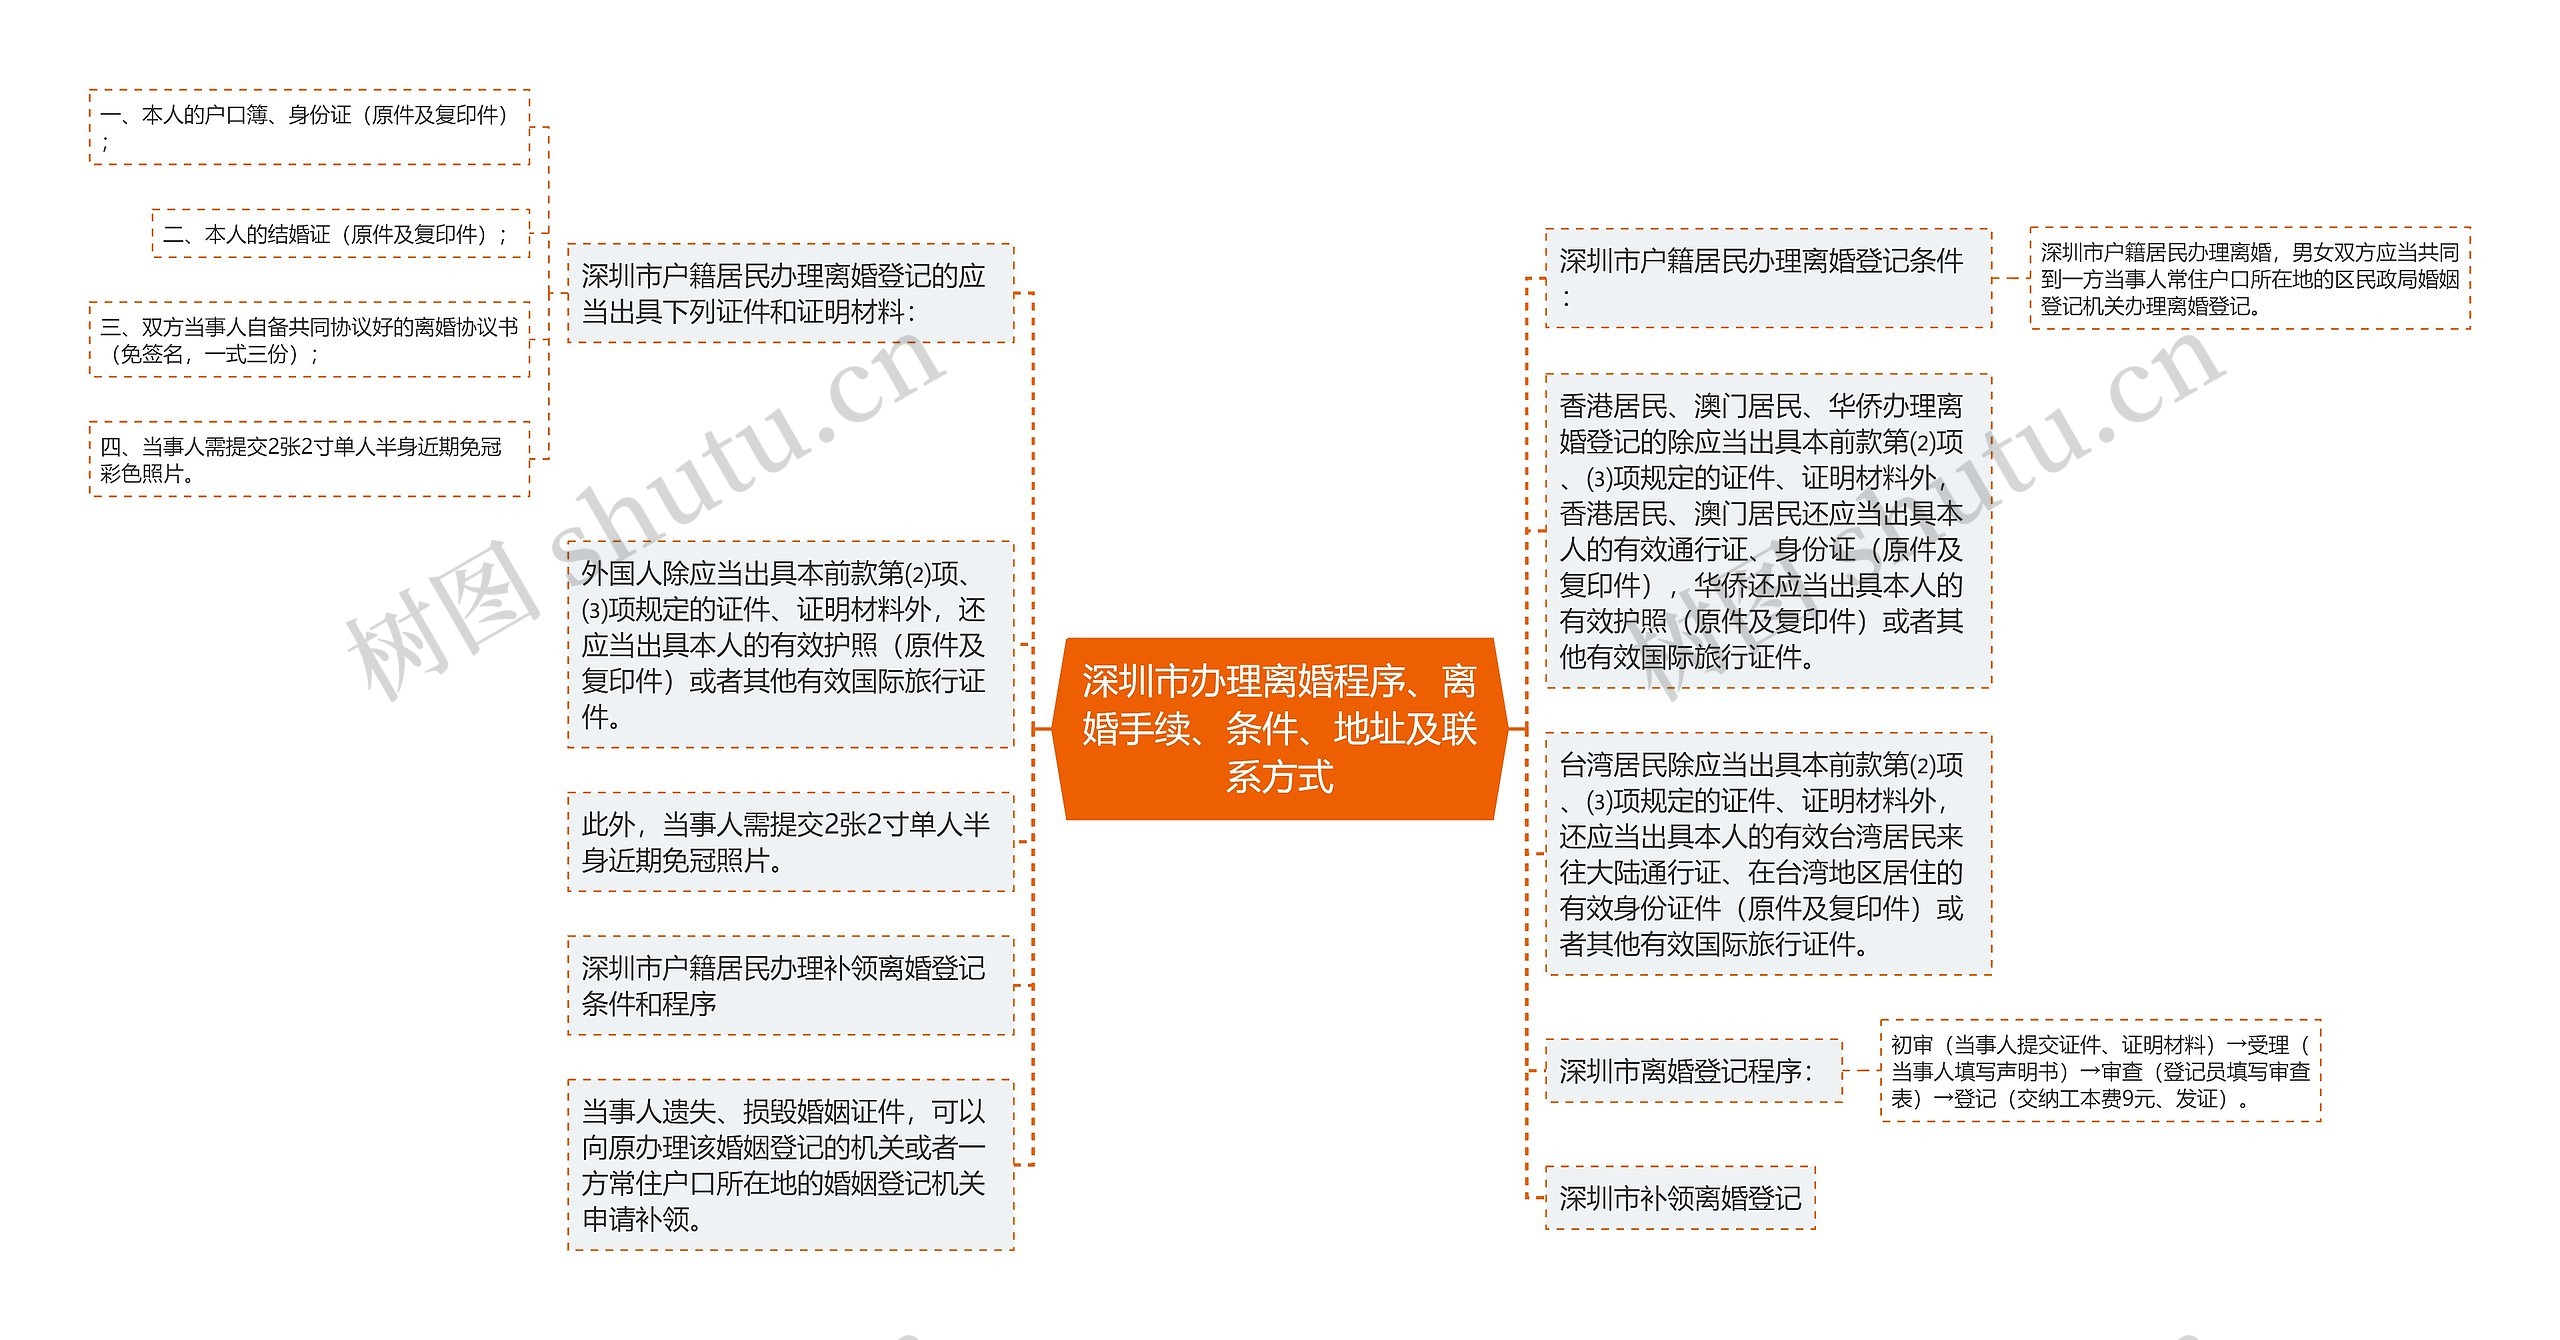 深圳市办理离婚程序、离婚手续、条件、地址及联系方式